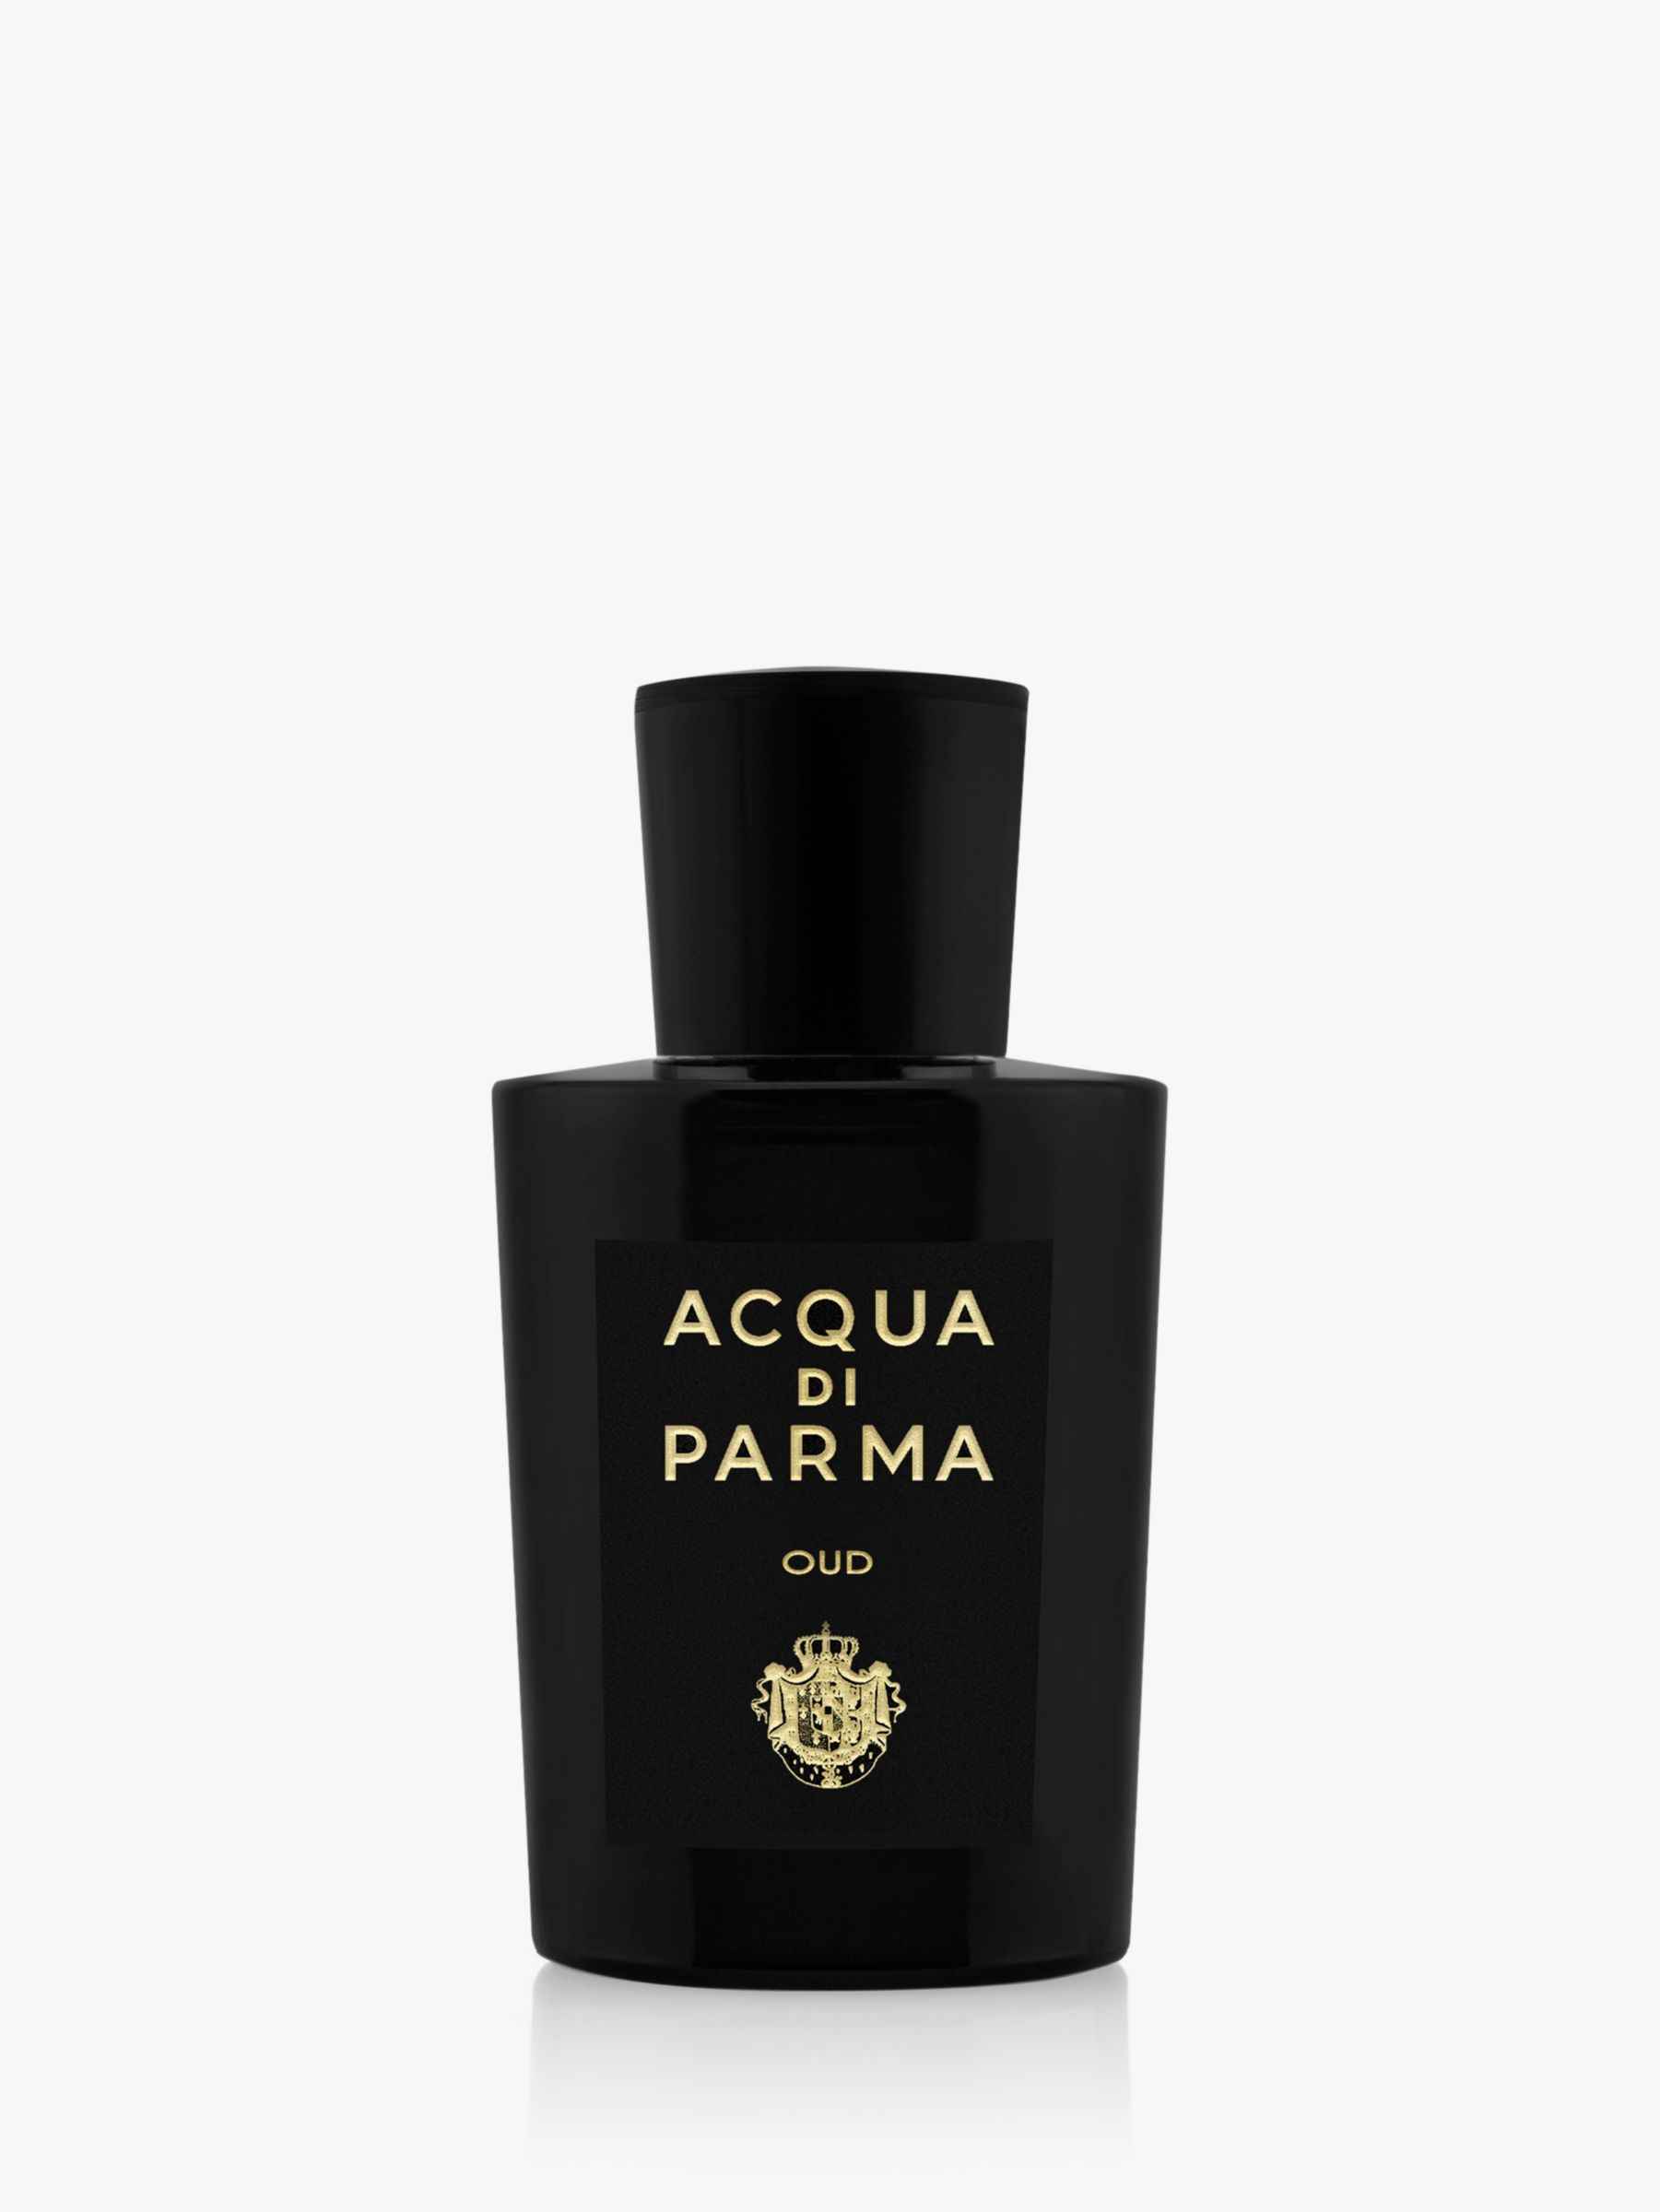 Acqua di Parma Oud Eau de Parfum, 100ml